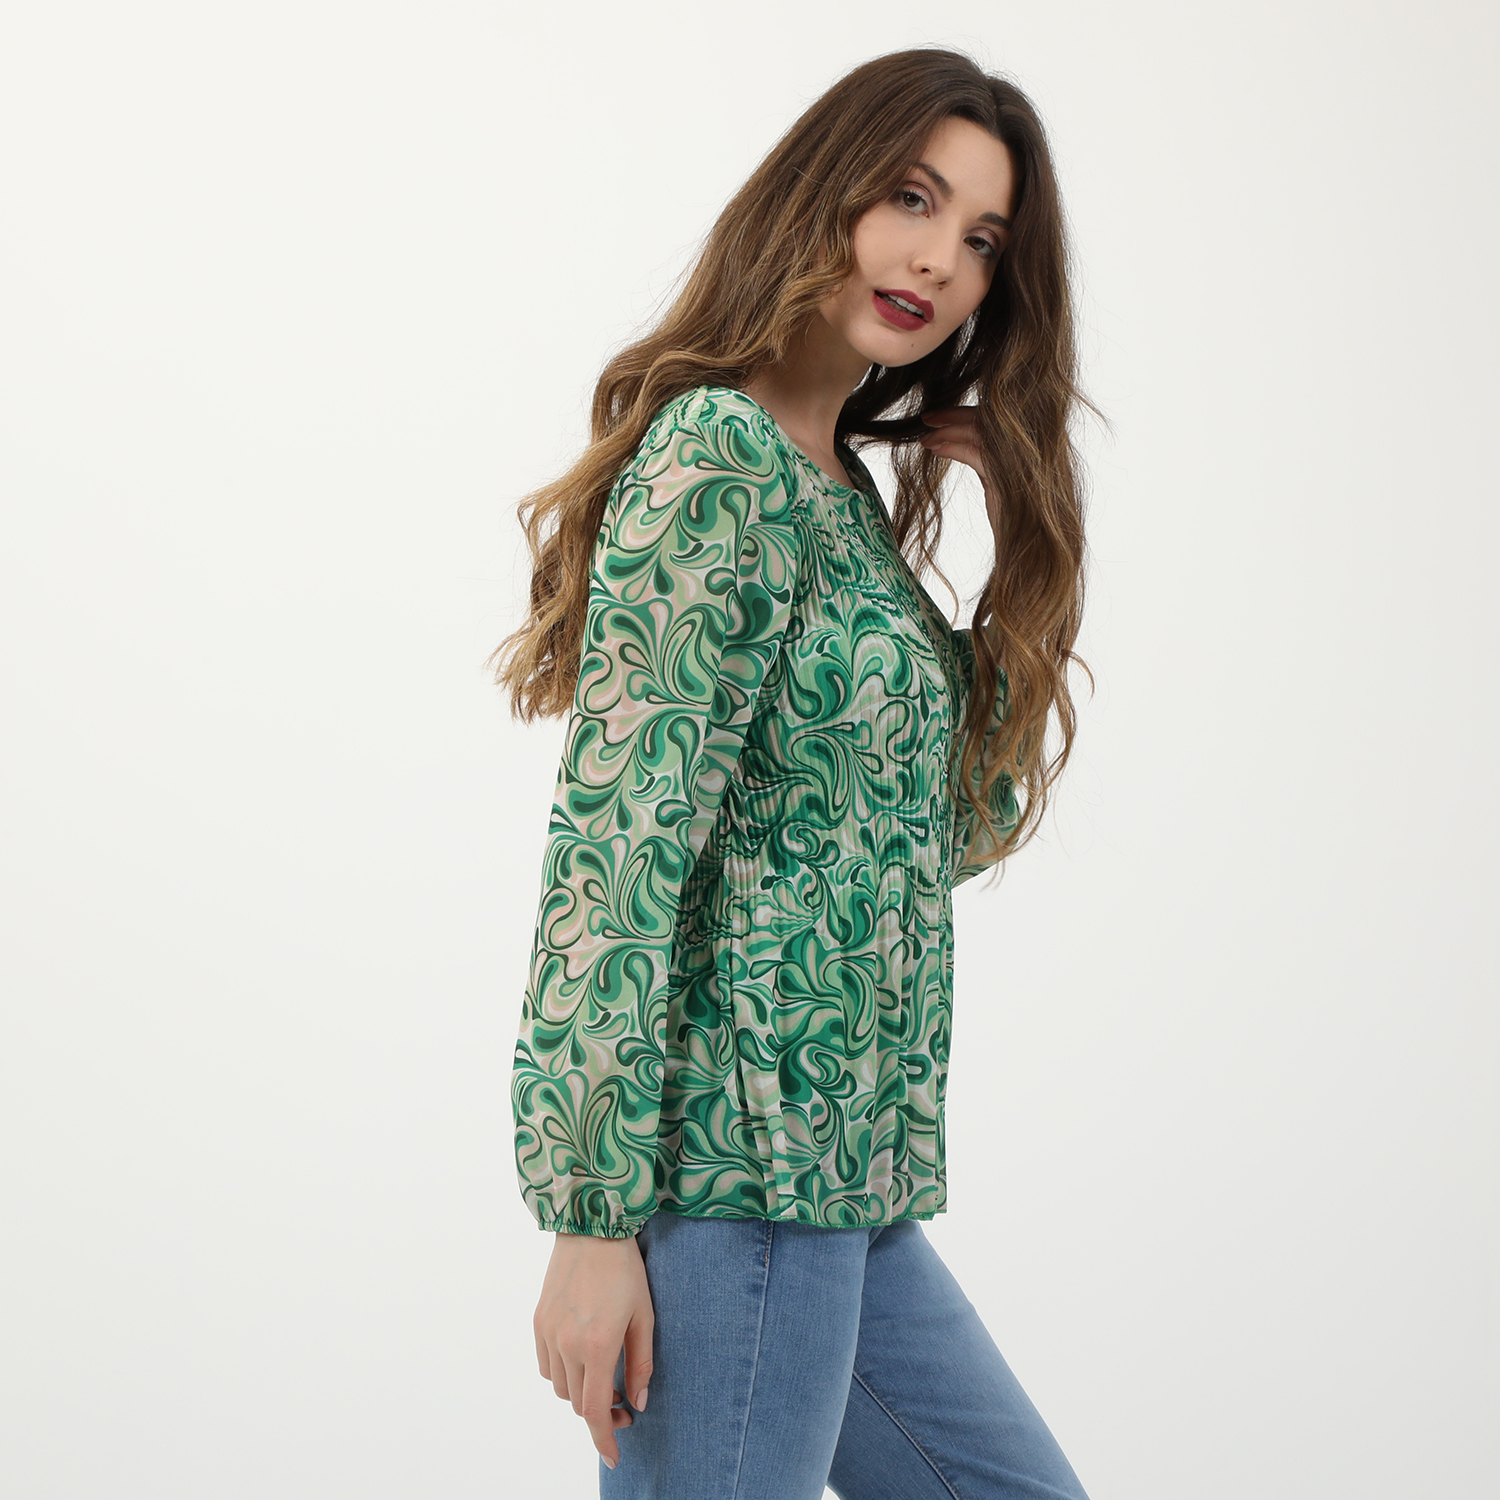 Ανδρικά/Ρούχα/Μπλούζες/Μακρυμάνικες 'ALE - Γυναικεία μπλούζα 'ALE πράσινη εκρού